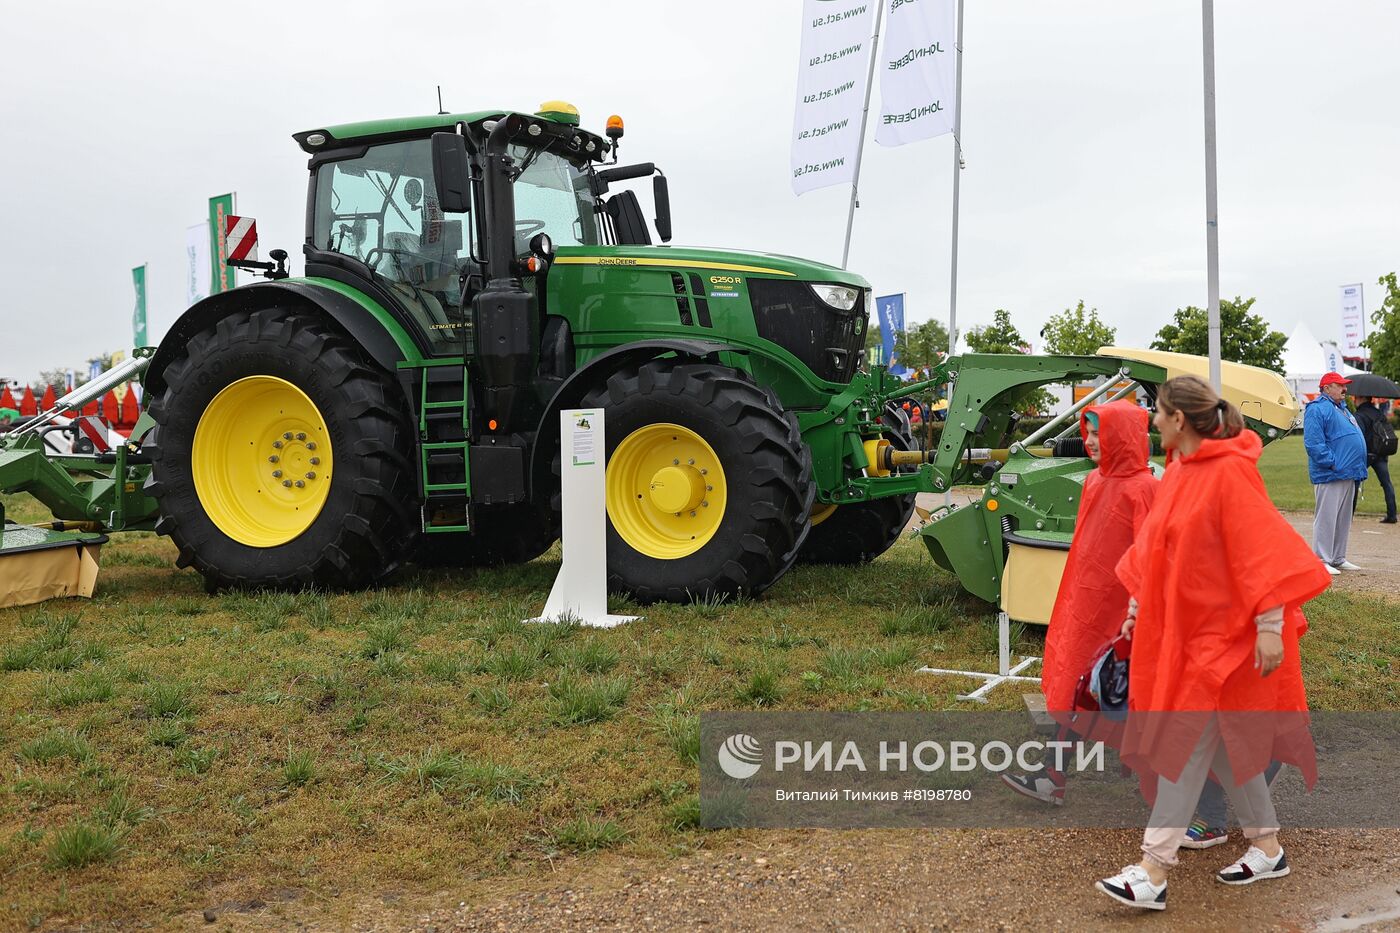 XXII Агропромышленная выставка "Золотая нива" в Краснодарском крае